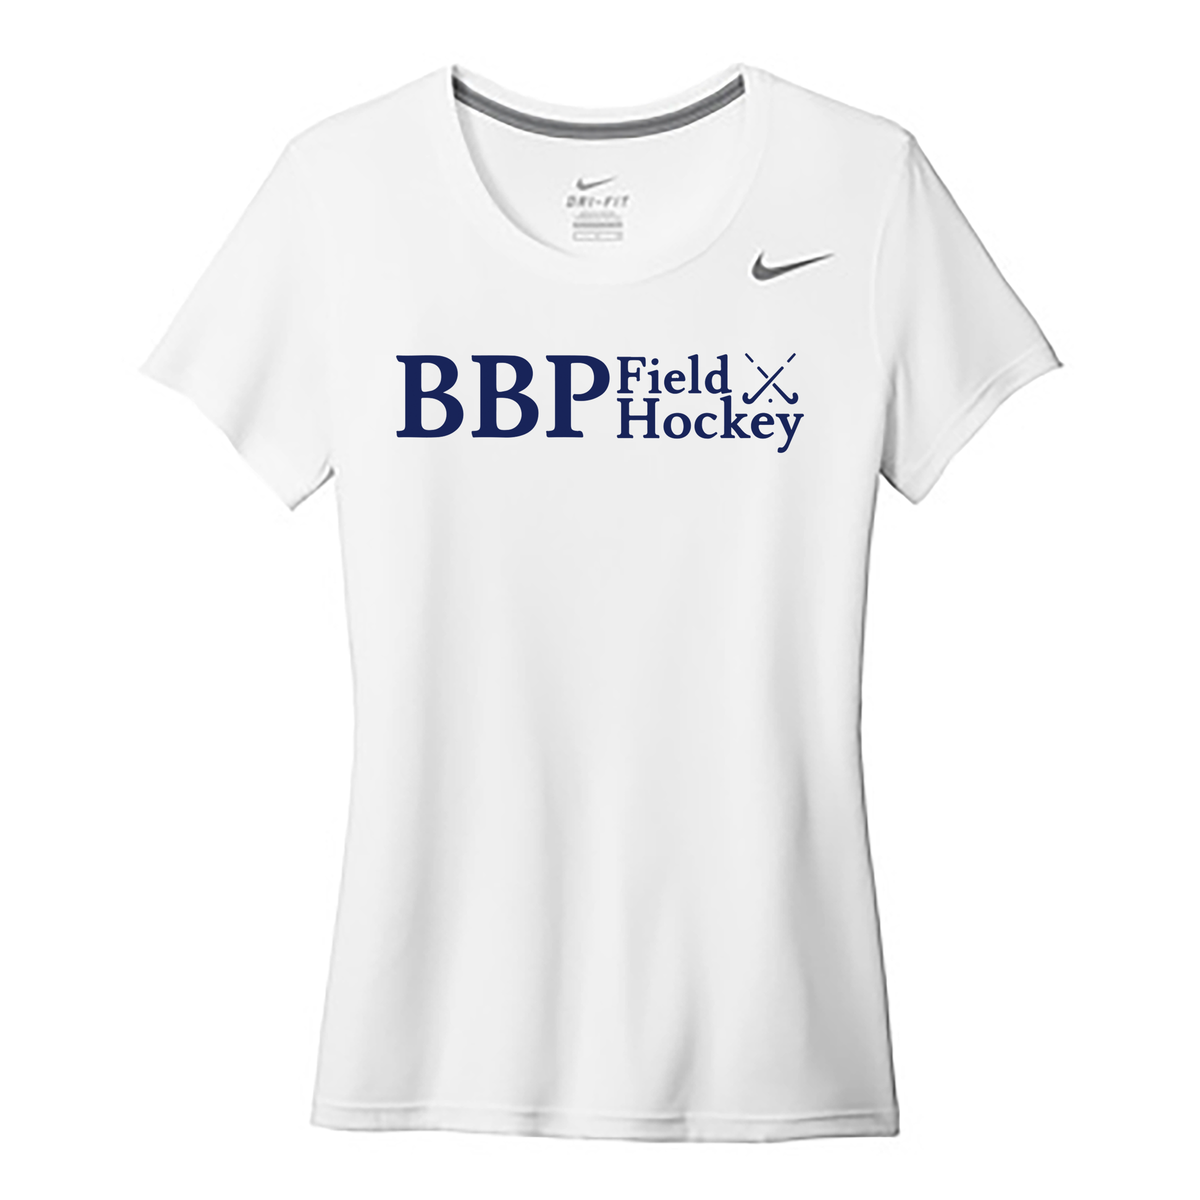 BBP Field Hockey Nike Ladies Legend Tee